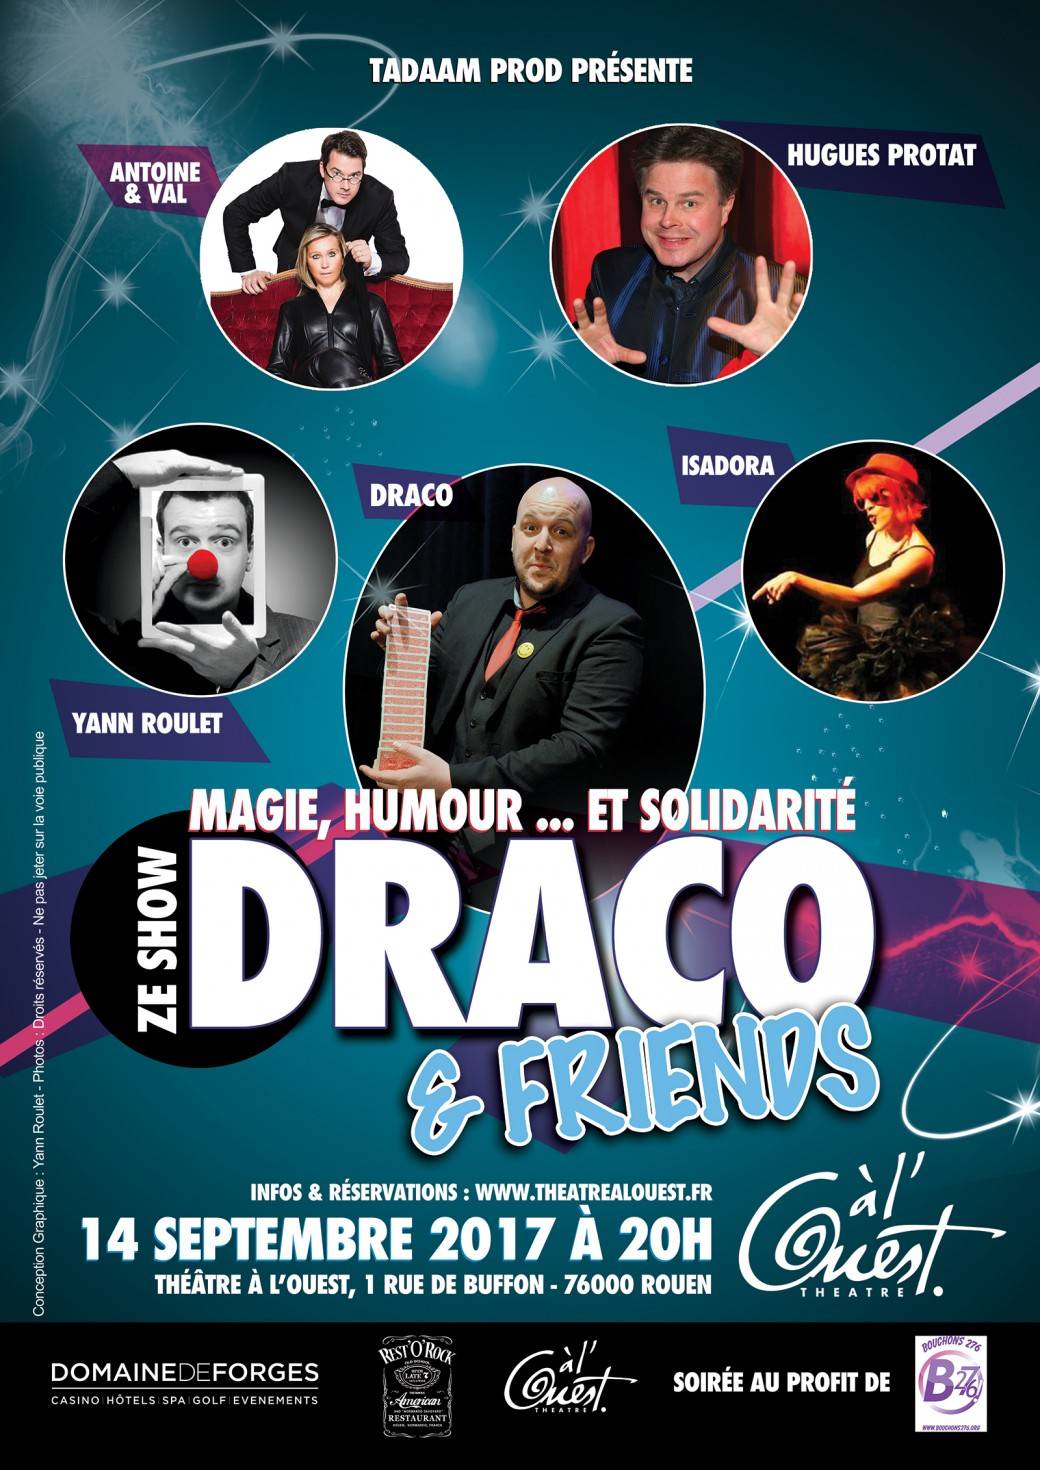 DRACO présente "Draco & friends" au profit de l'association "Bouchons 276"